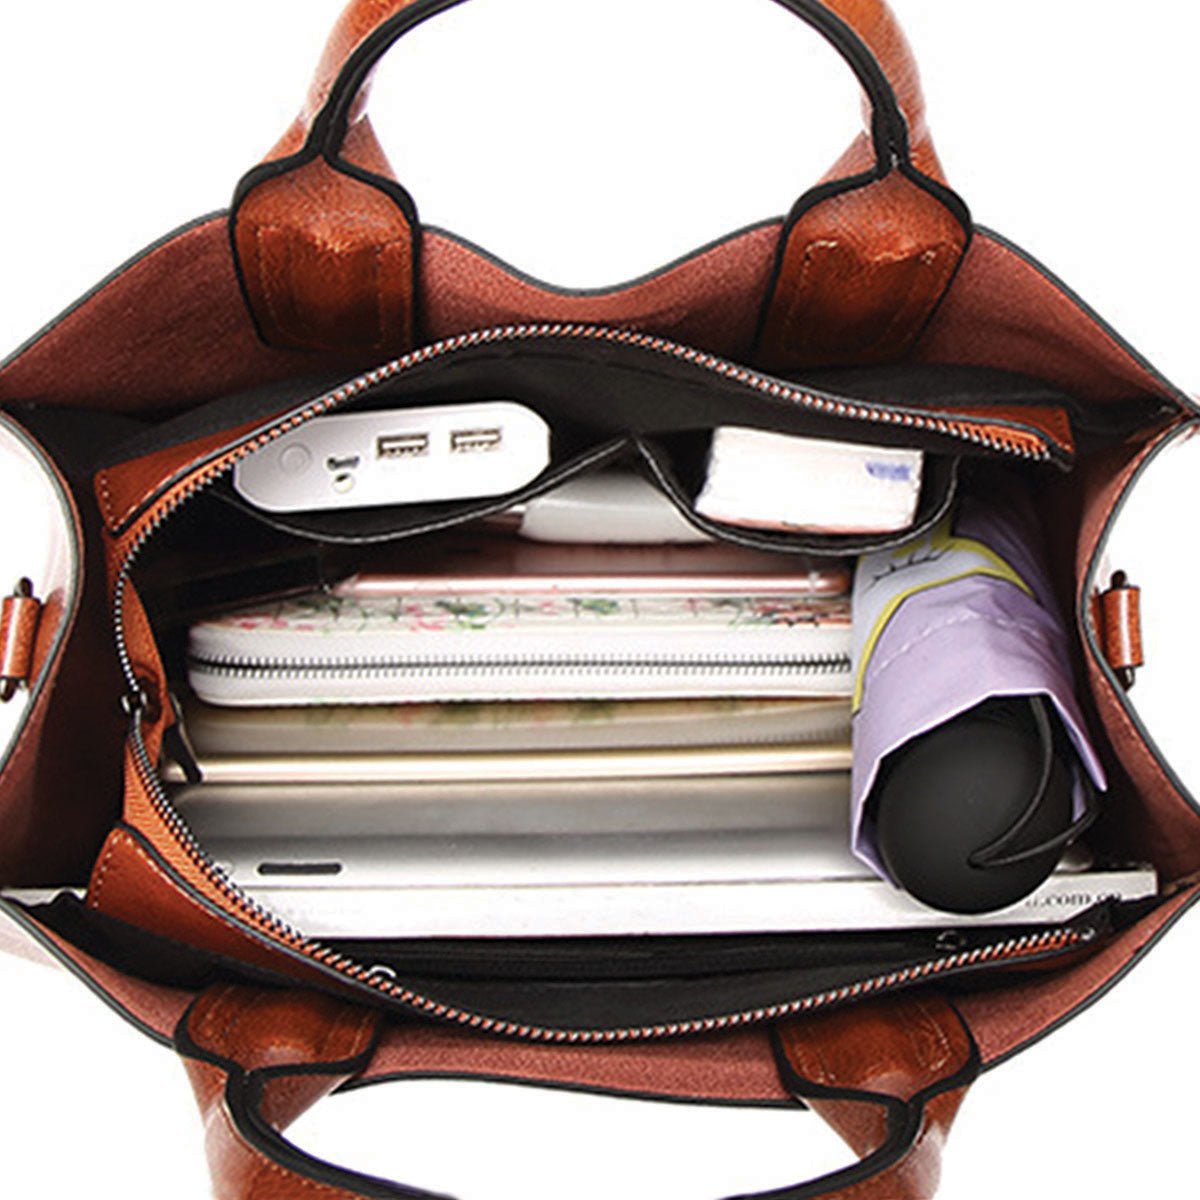 Ihr bester Begleiter – Basset Hound Luxus-Handtasche V1